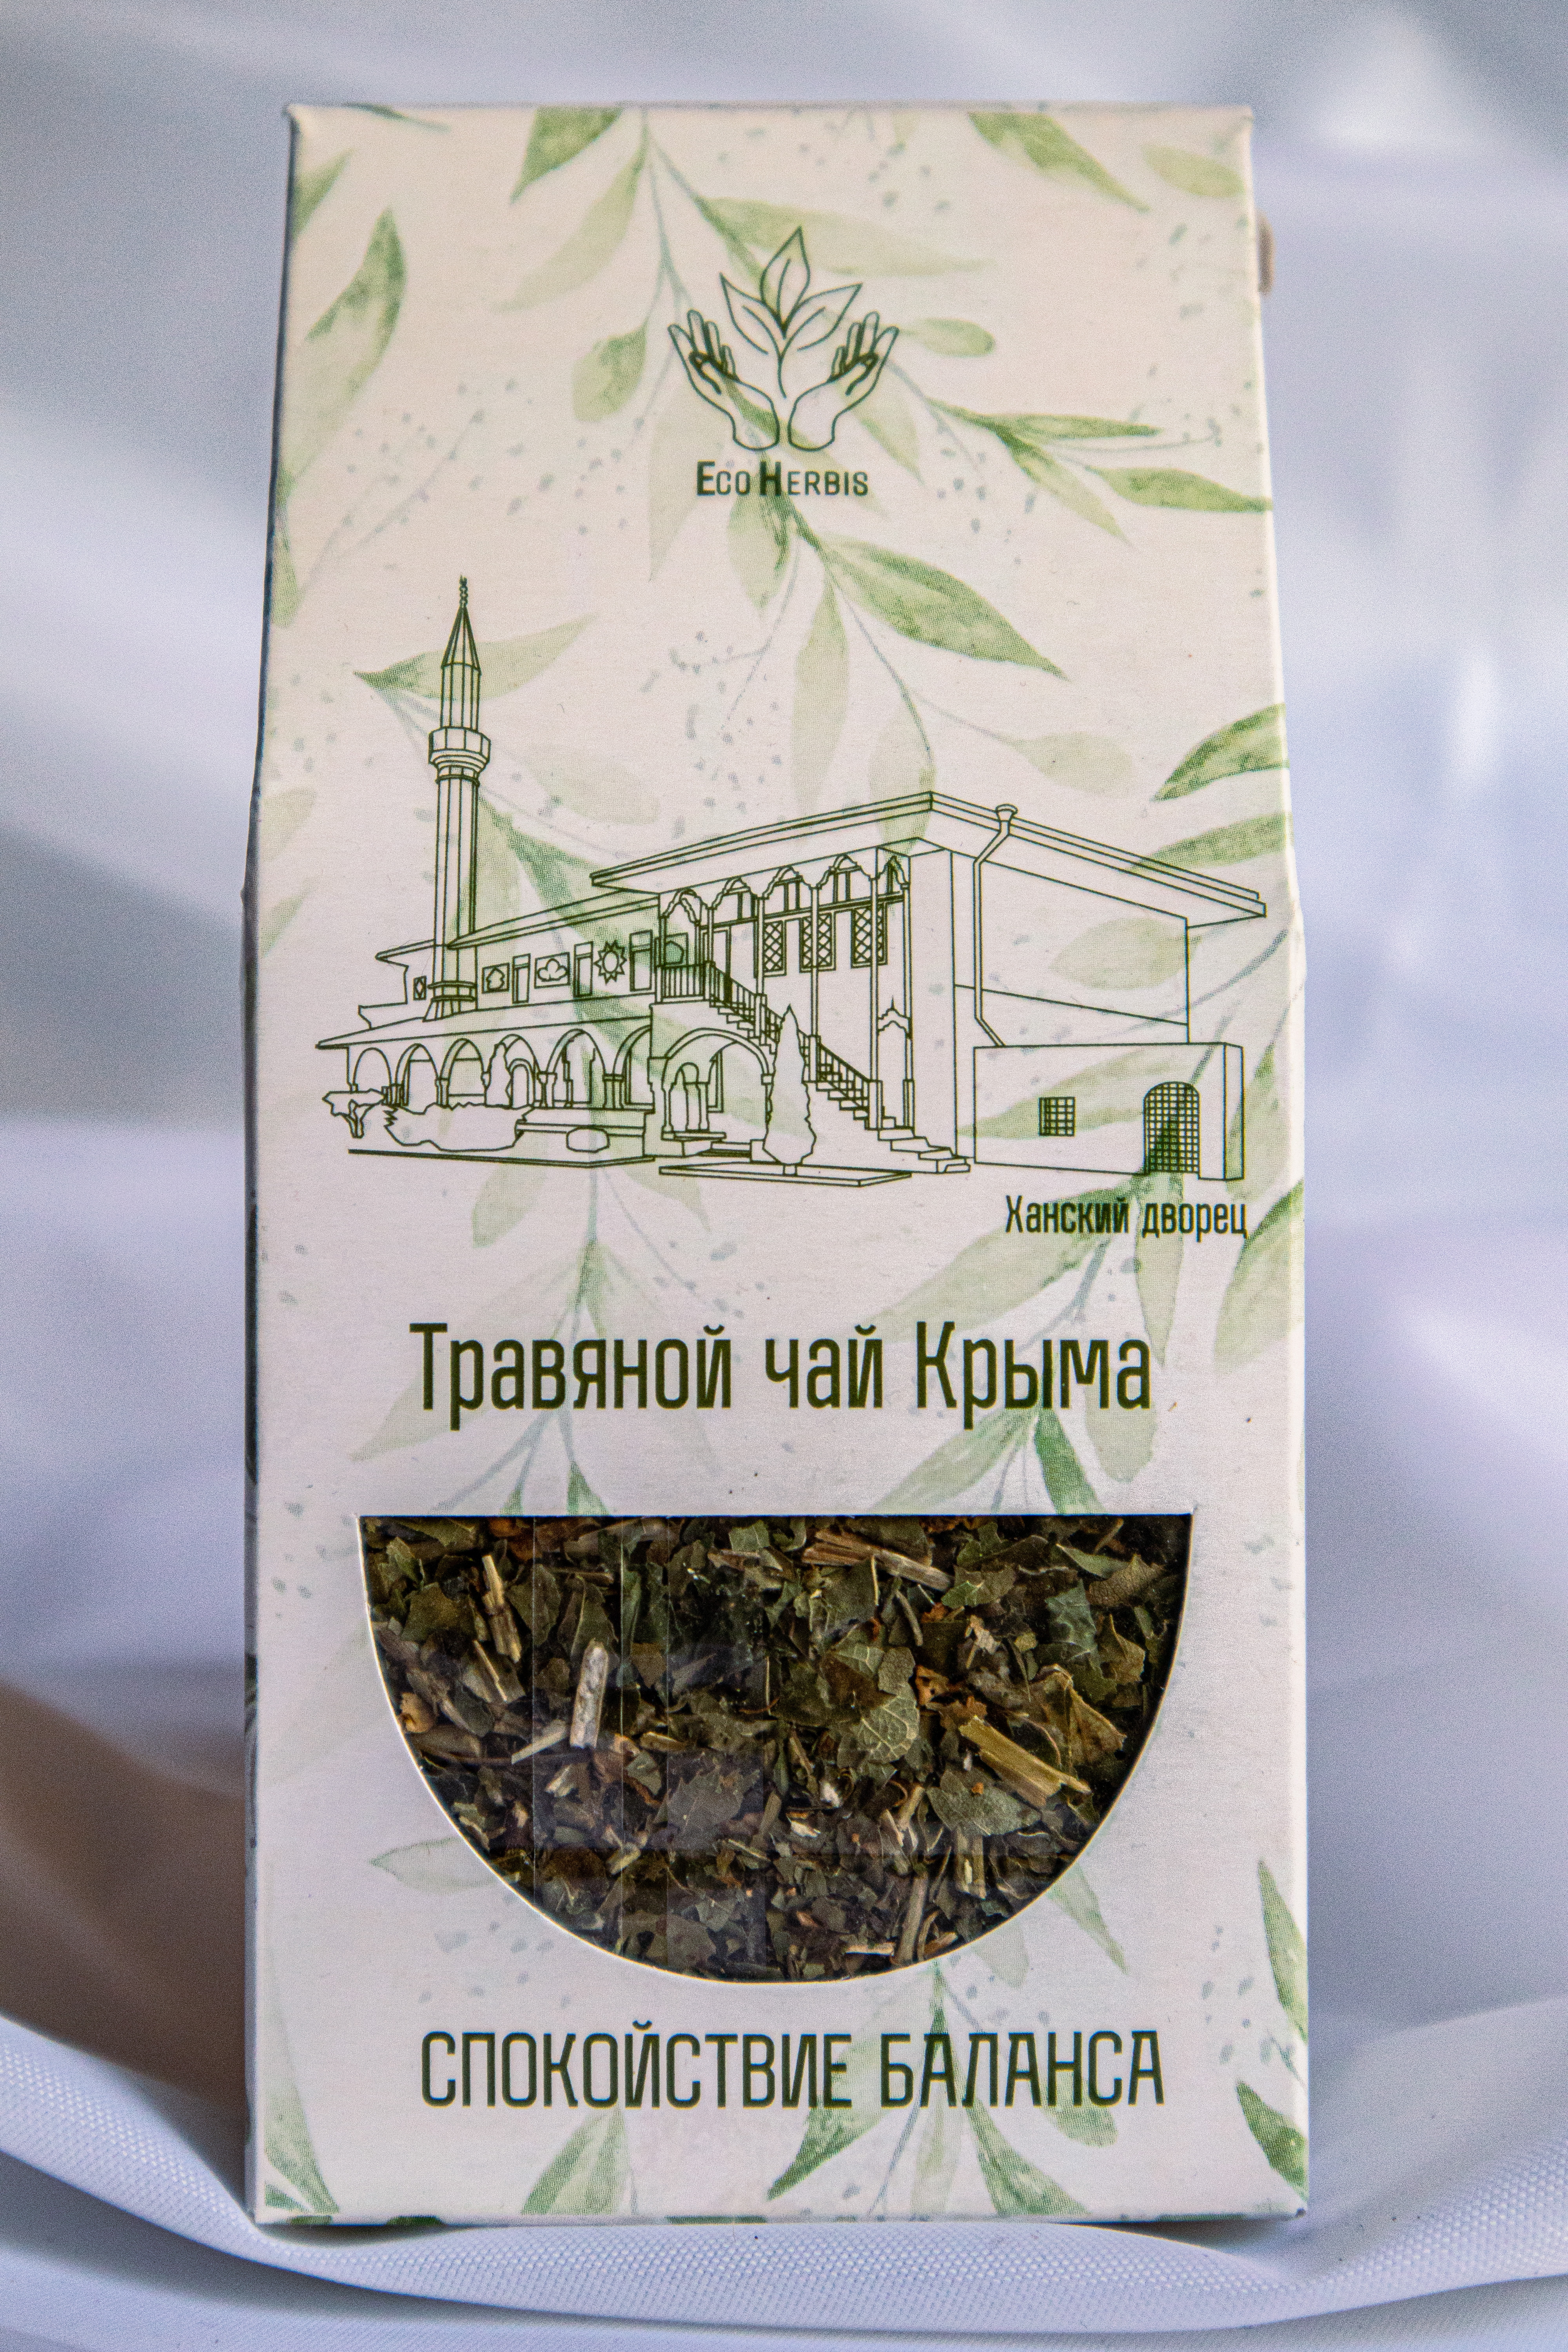 Чайный напиток Крымских трав «Спокойствие баланса» 35 гр.